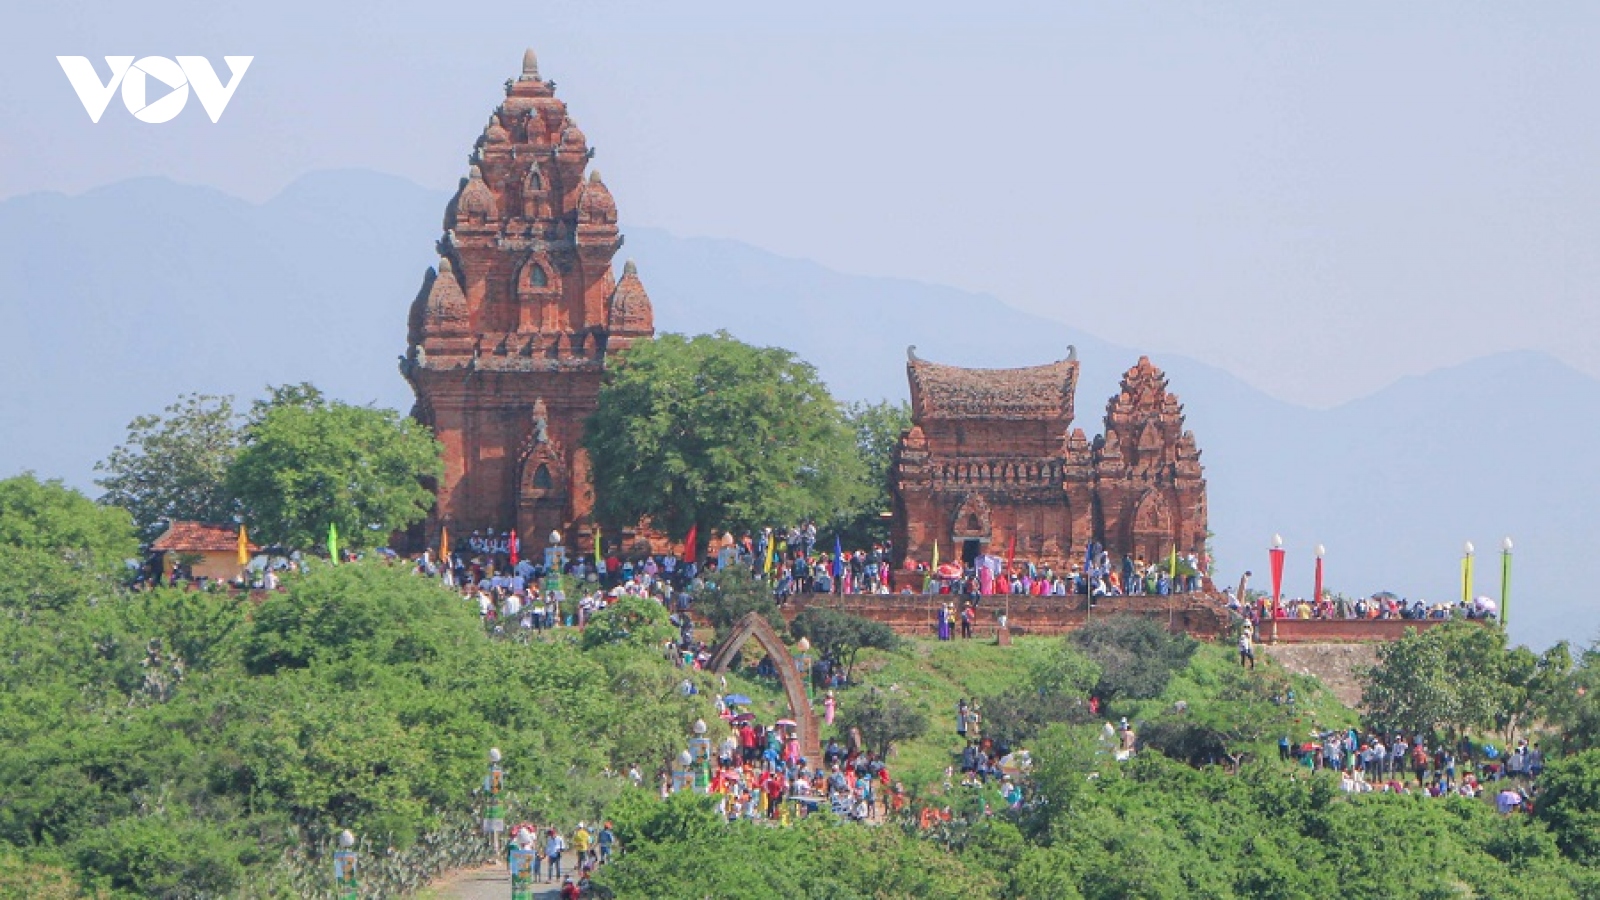 Du lịch Ninh Thuận đang bứt phá